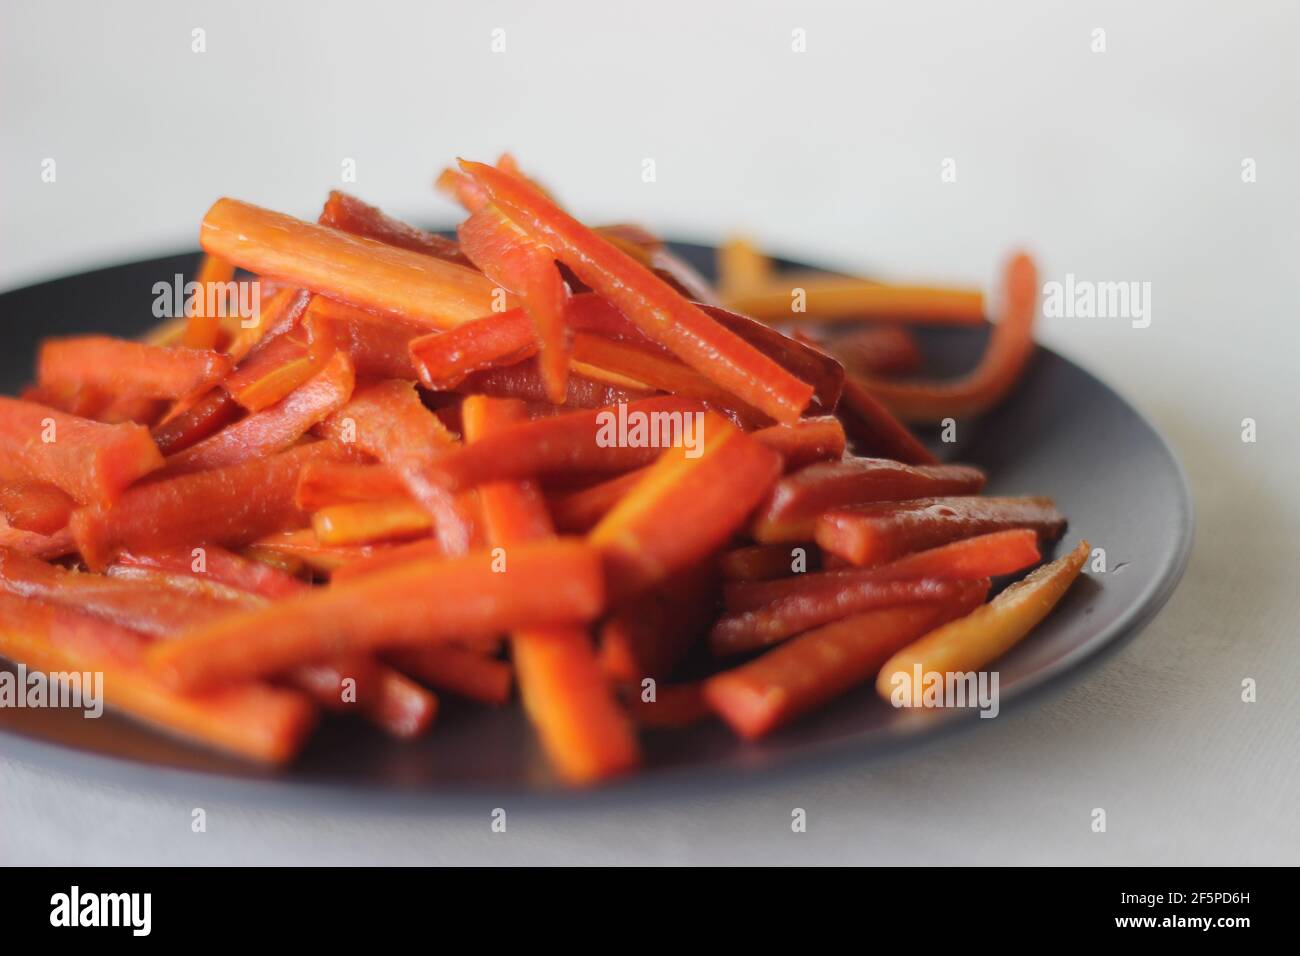 Bâtonnets de carottes caramélisés. Les carottes sautées avec du beurre et du sucre. Une collation rapide et saine. Prise de vue sur fond blanc Banque D'Images